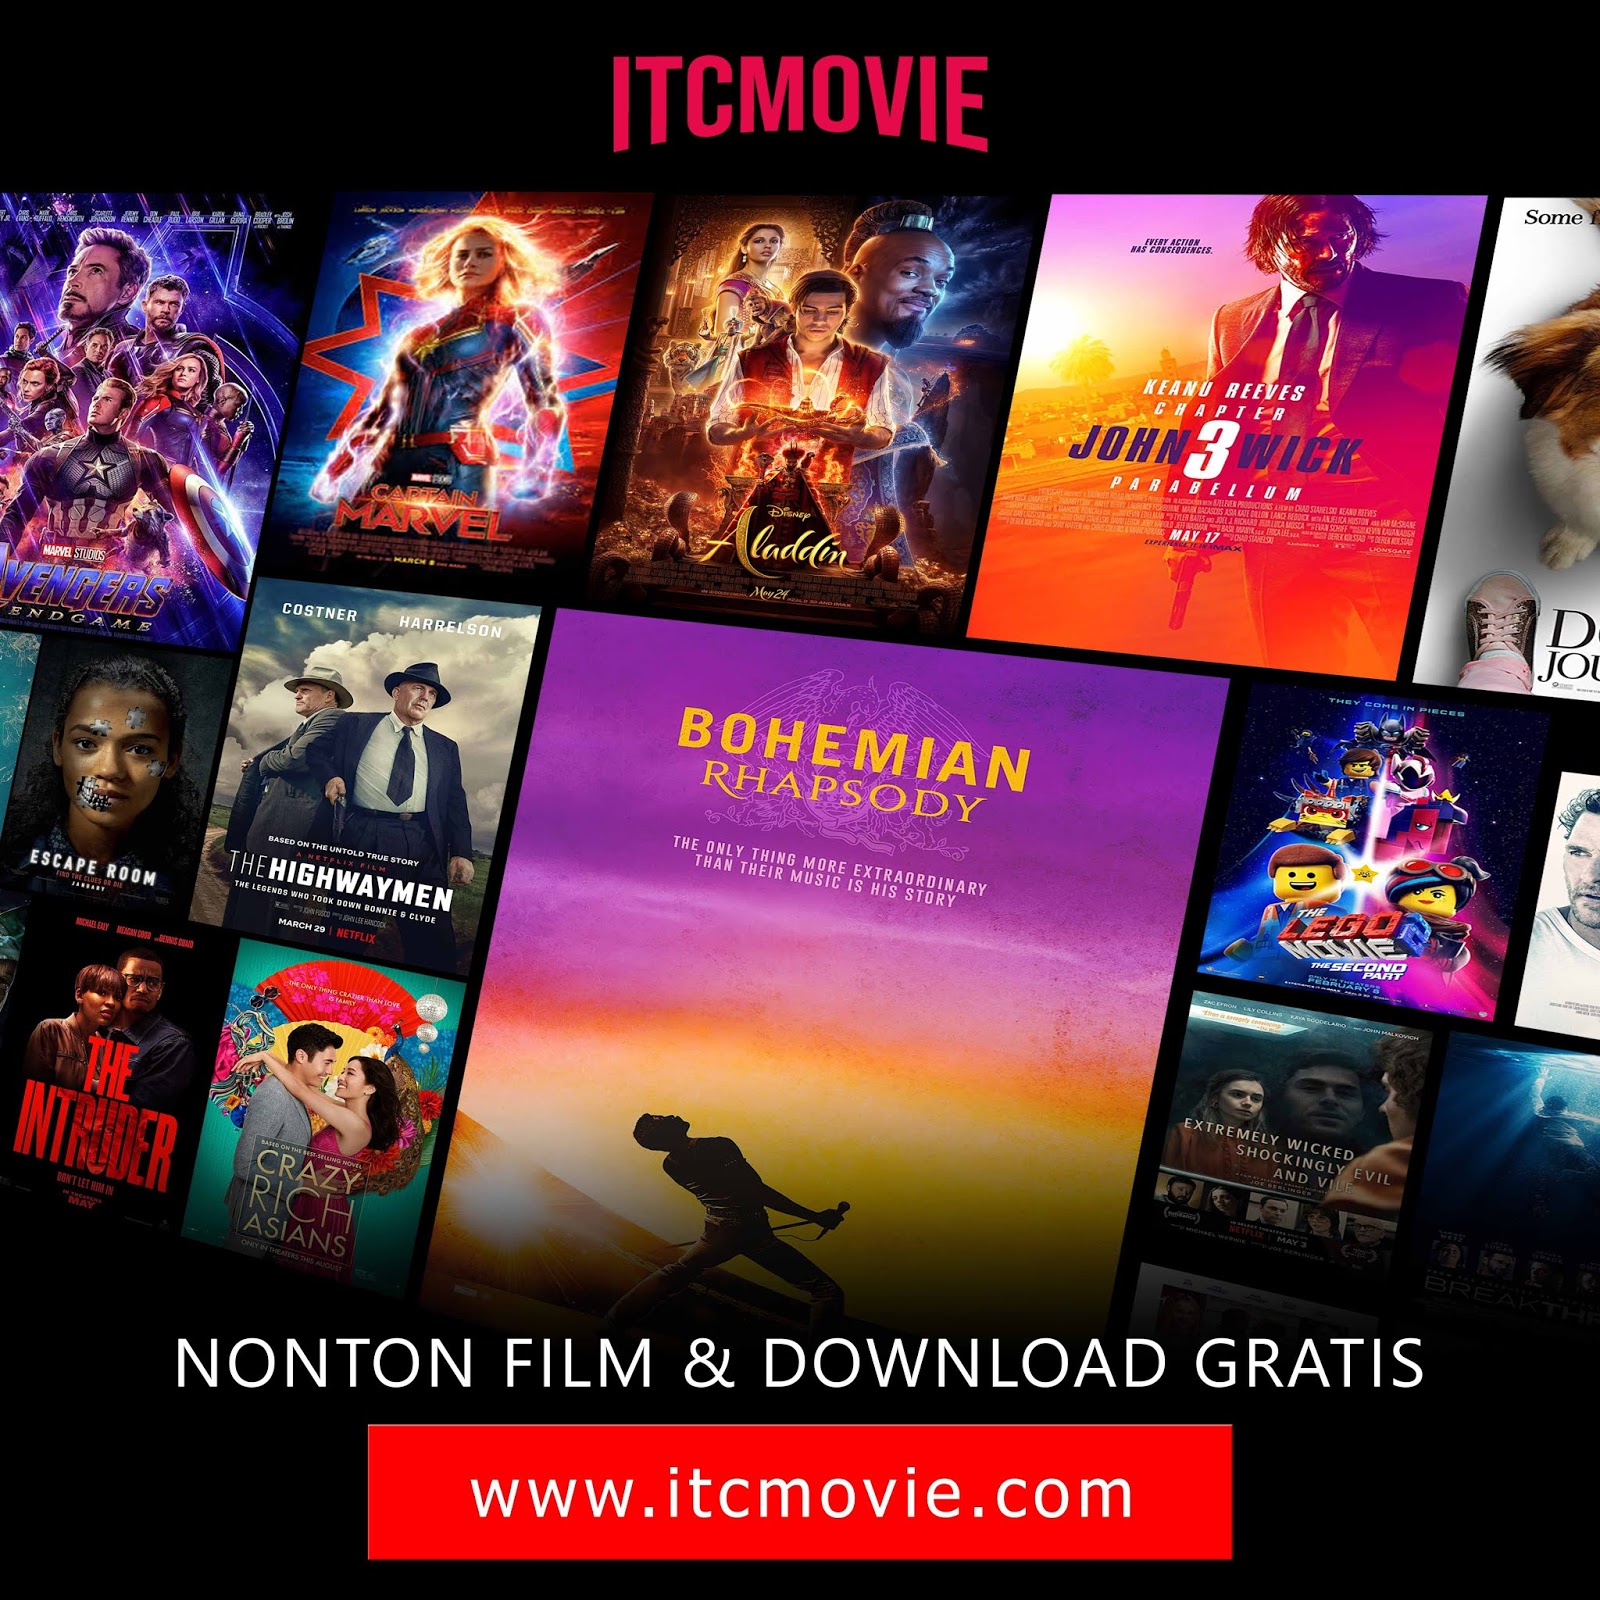  Nonton  Movie  Online Streaming Film  Bioskop Terbaru  